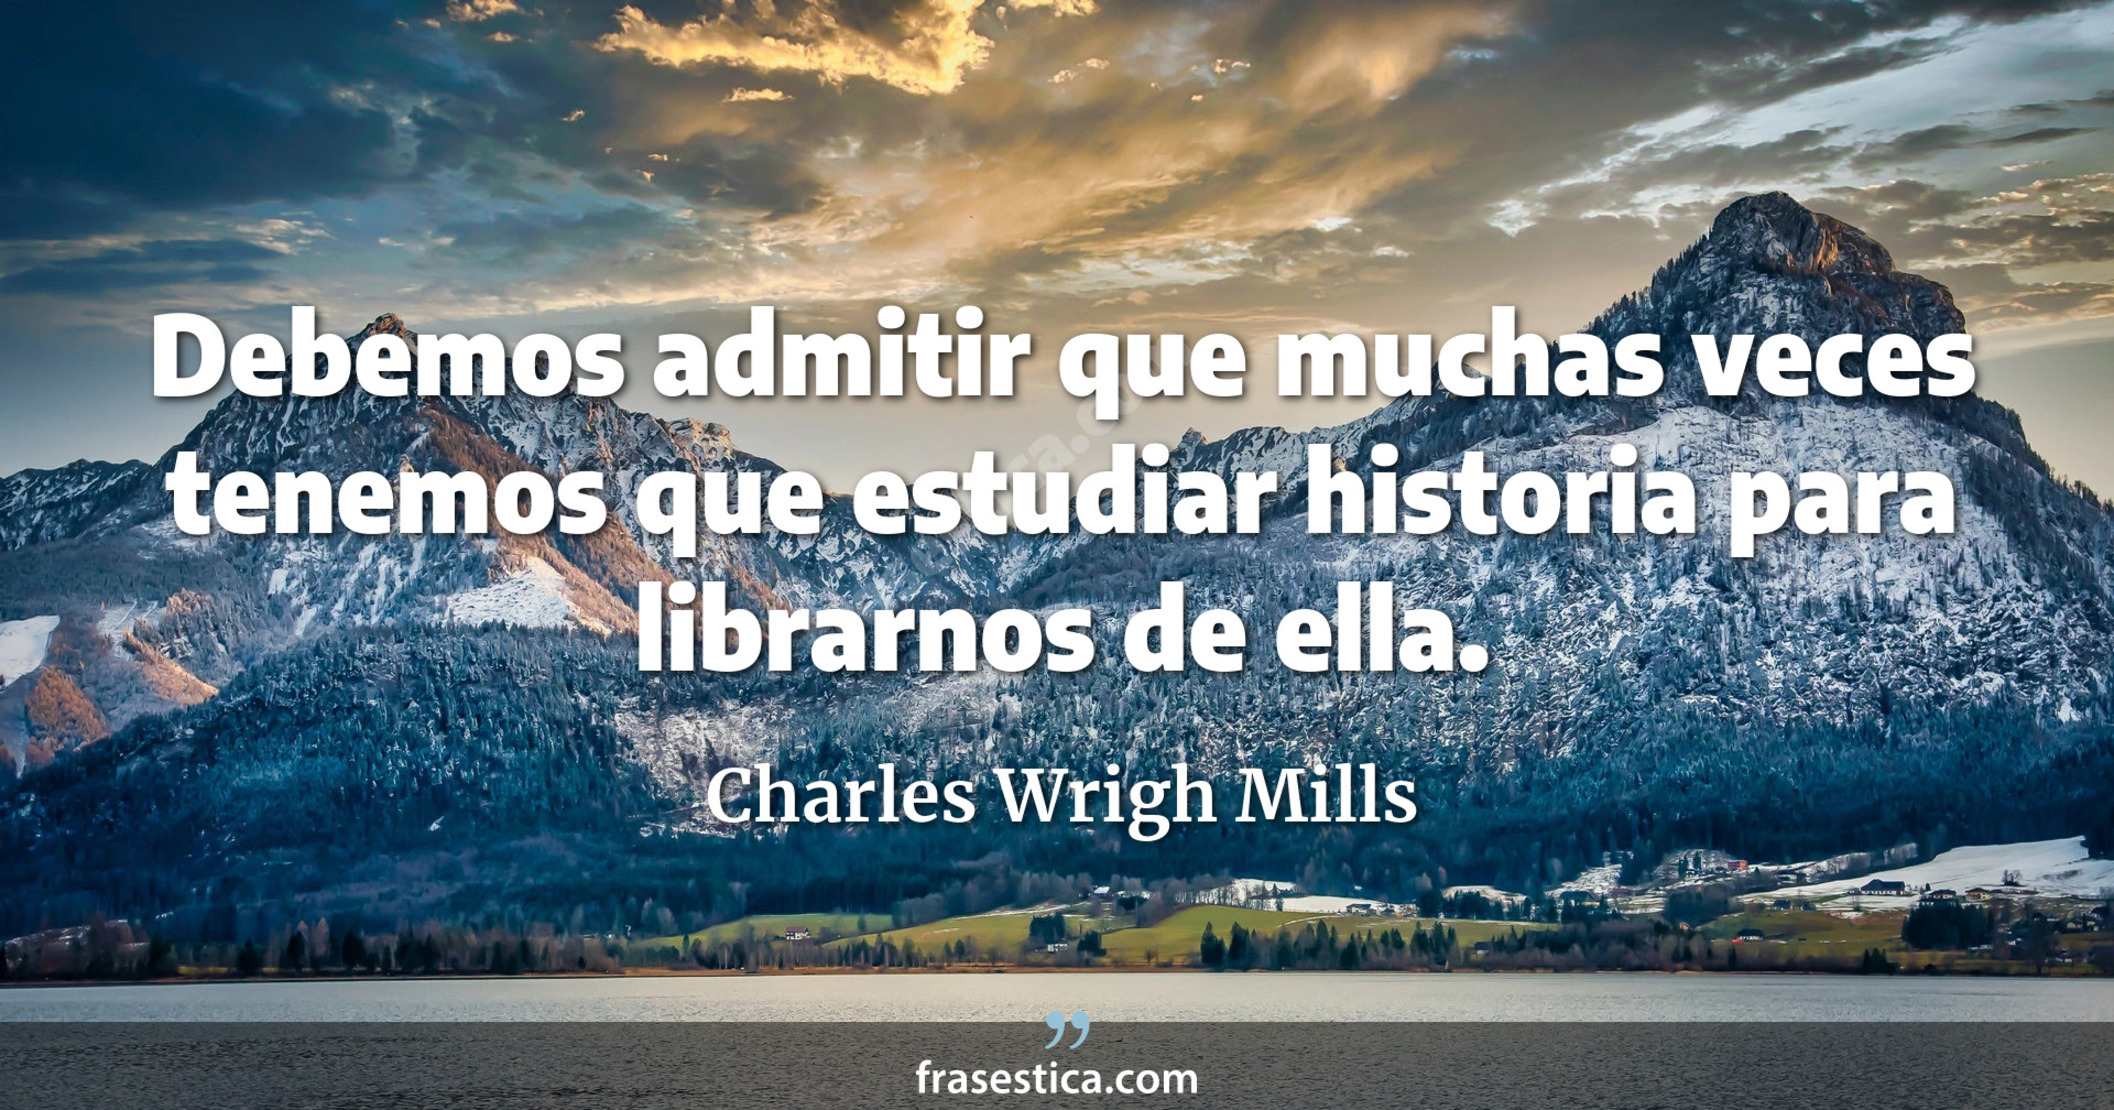 Debemos admitir que muchas veces tenemos que estudiar historia para librarnos de ella. - Charles Wrigh Mills